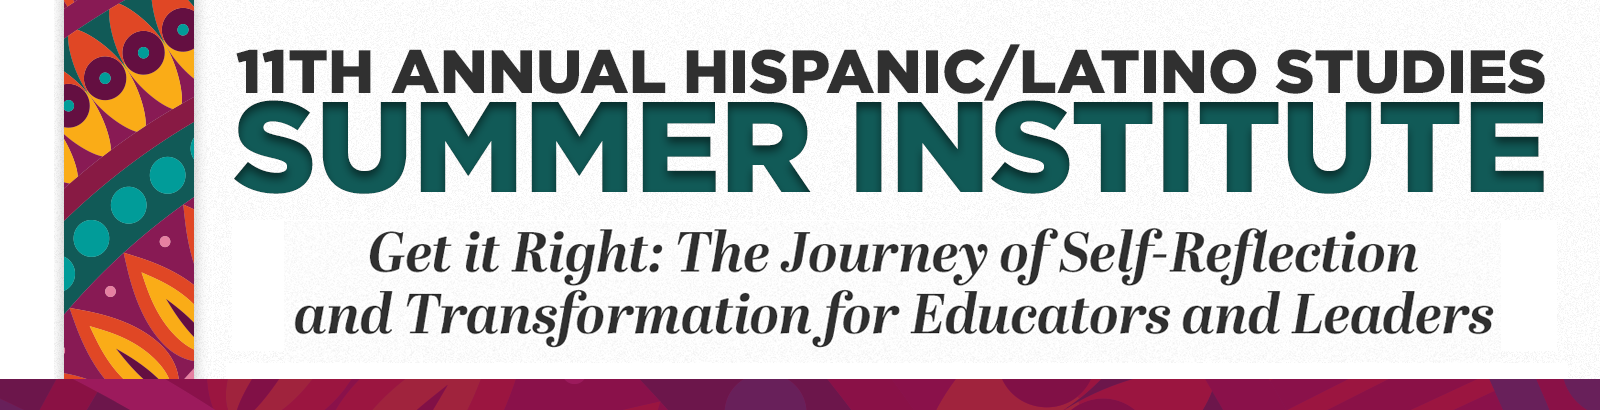 11th Annual Hispanic/Latino Studies Summer Institute